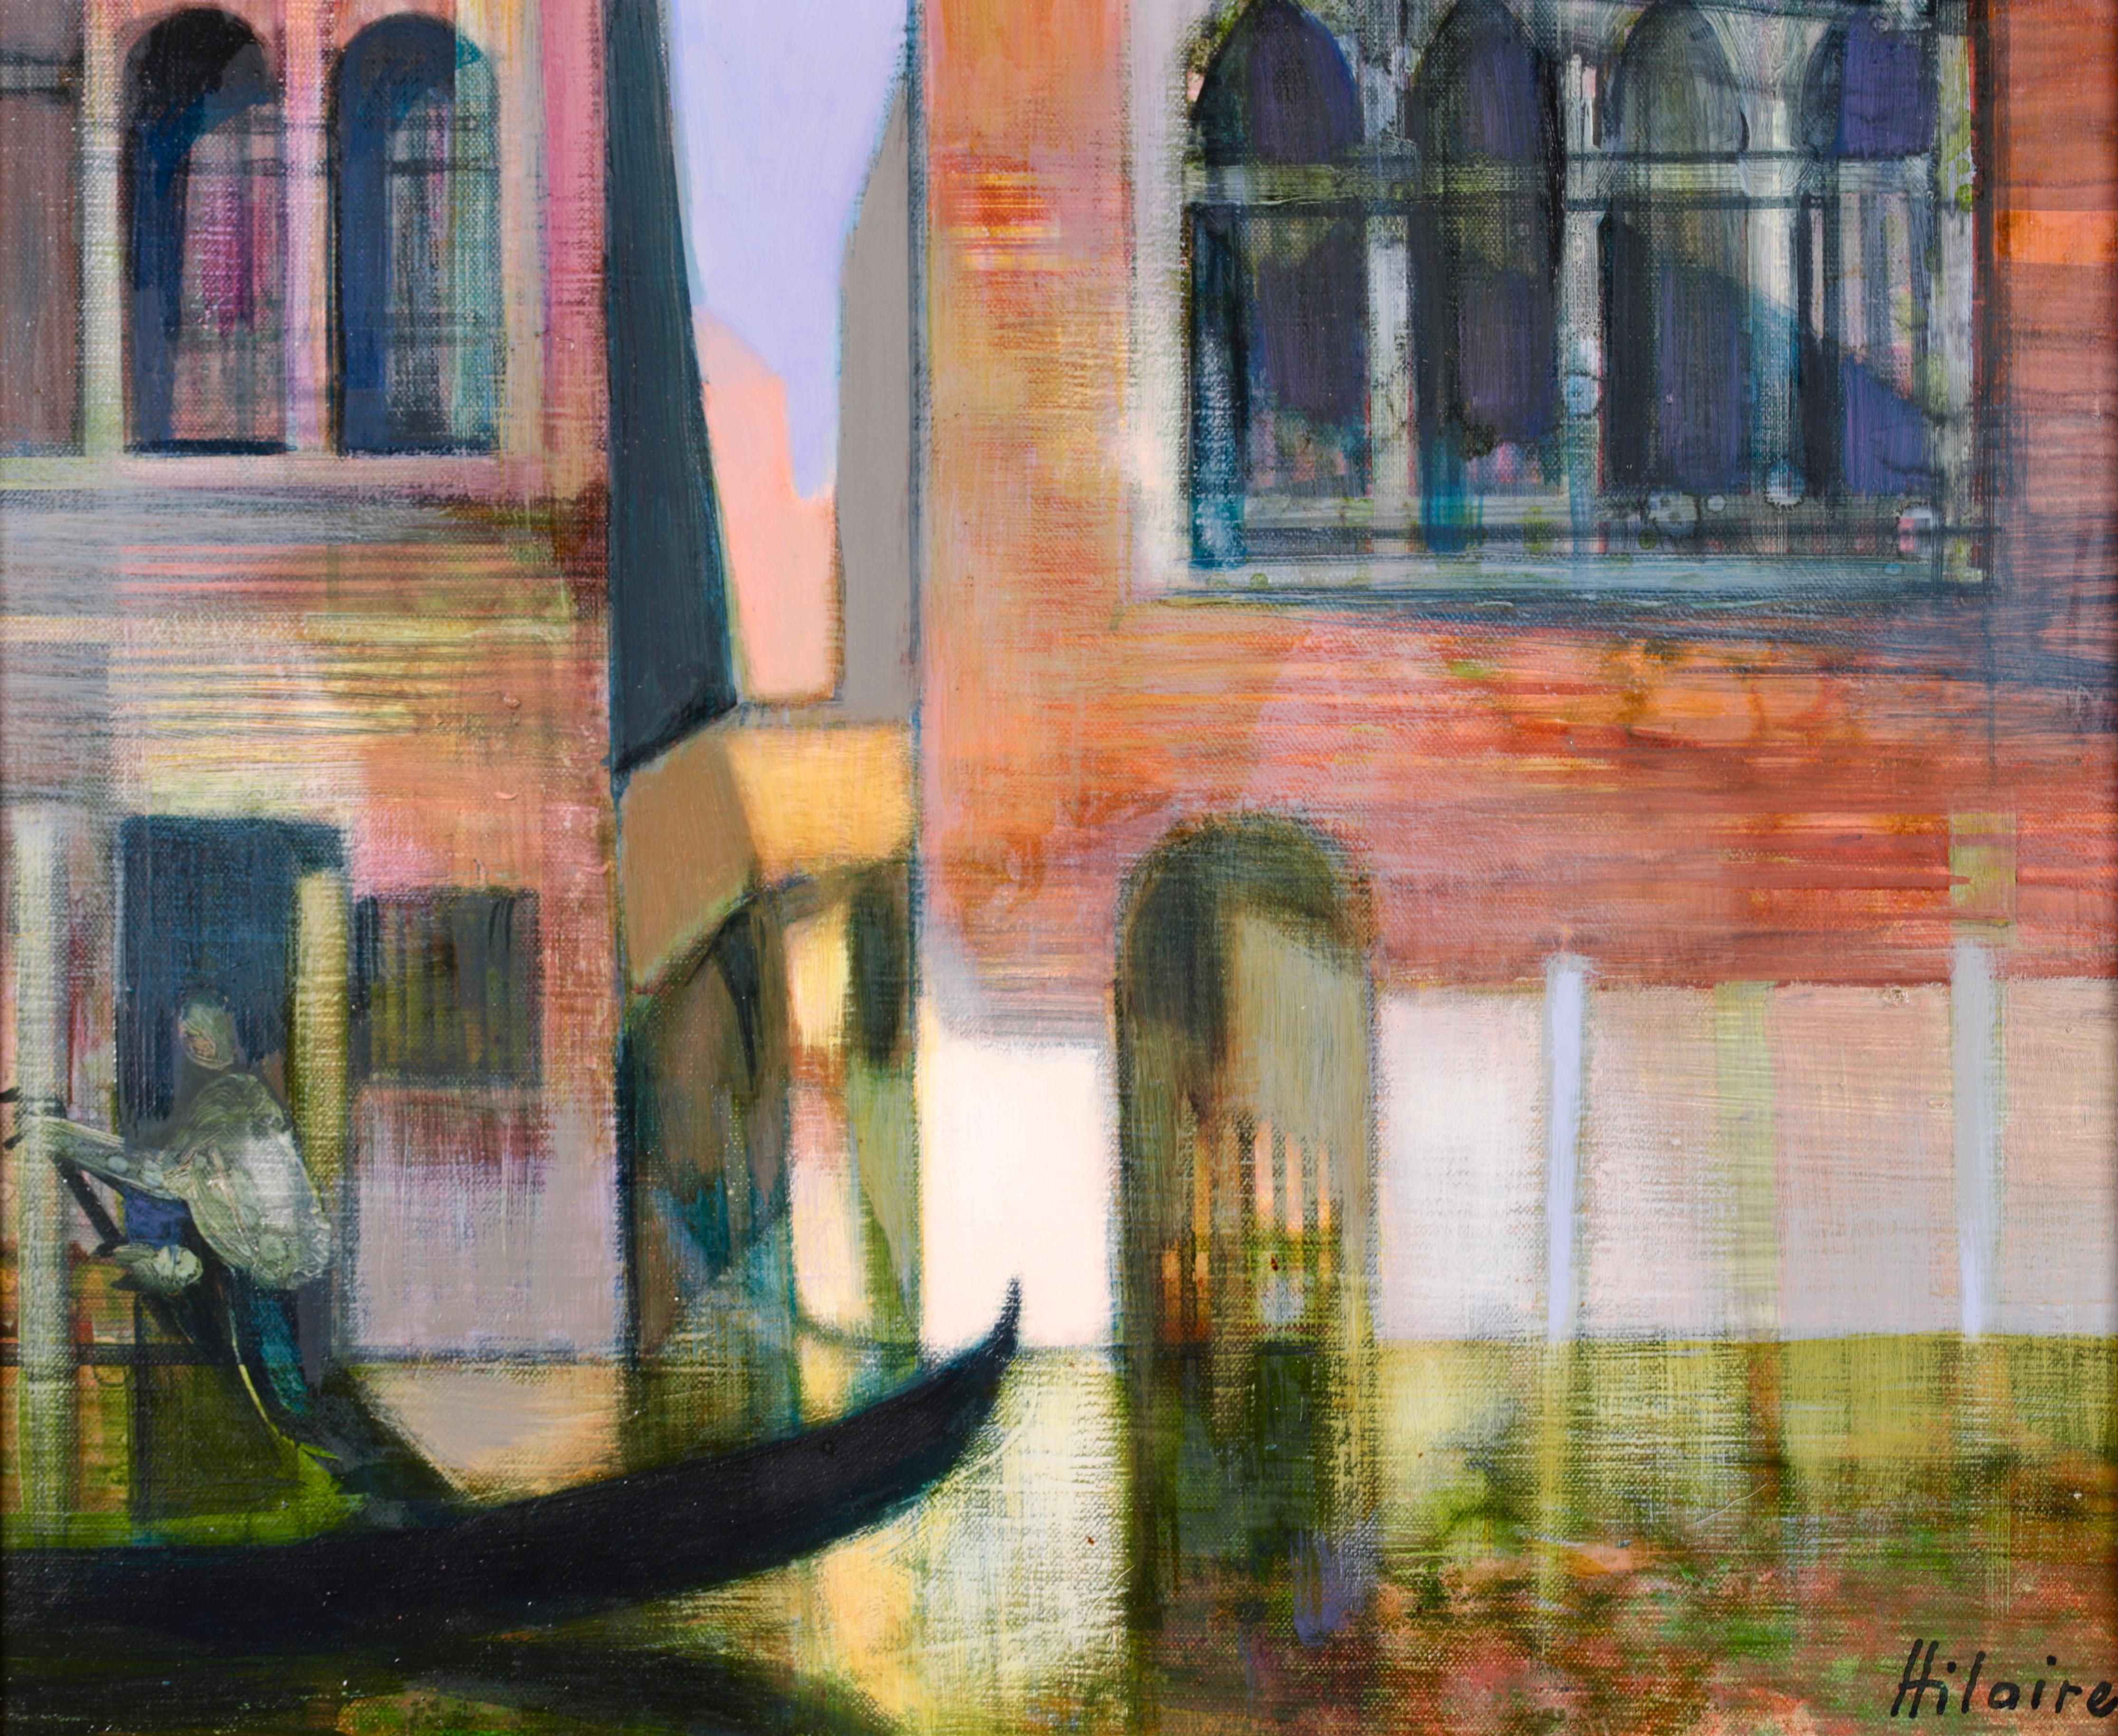 Vieux palais sur la canal - Venice - Cubist Landscape Oil by Camille Hilaire